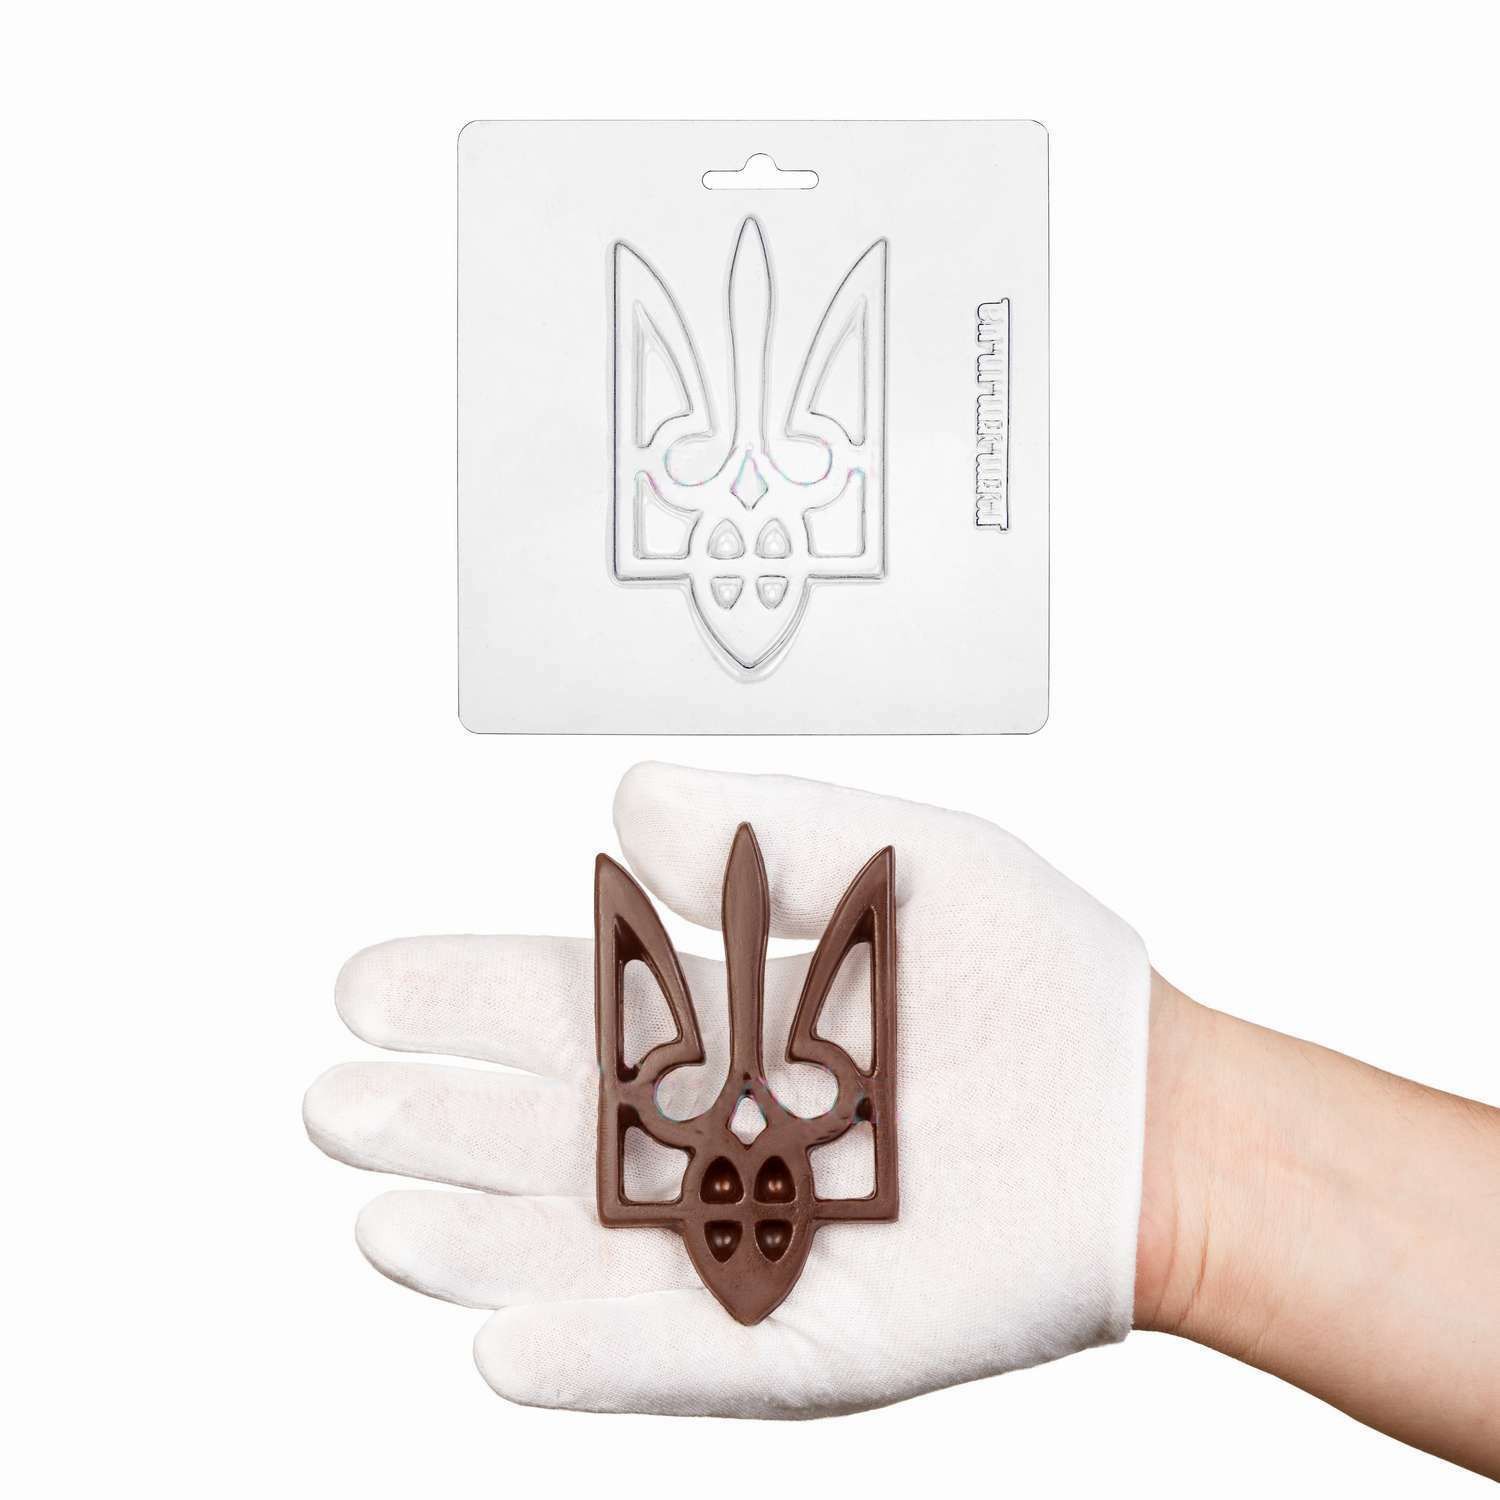 ⋗ Пластиковая форма для шоколада Герб Украины тризуб купить в Украине ➛ CakeShop.com.ua, фото